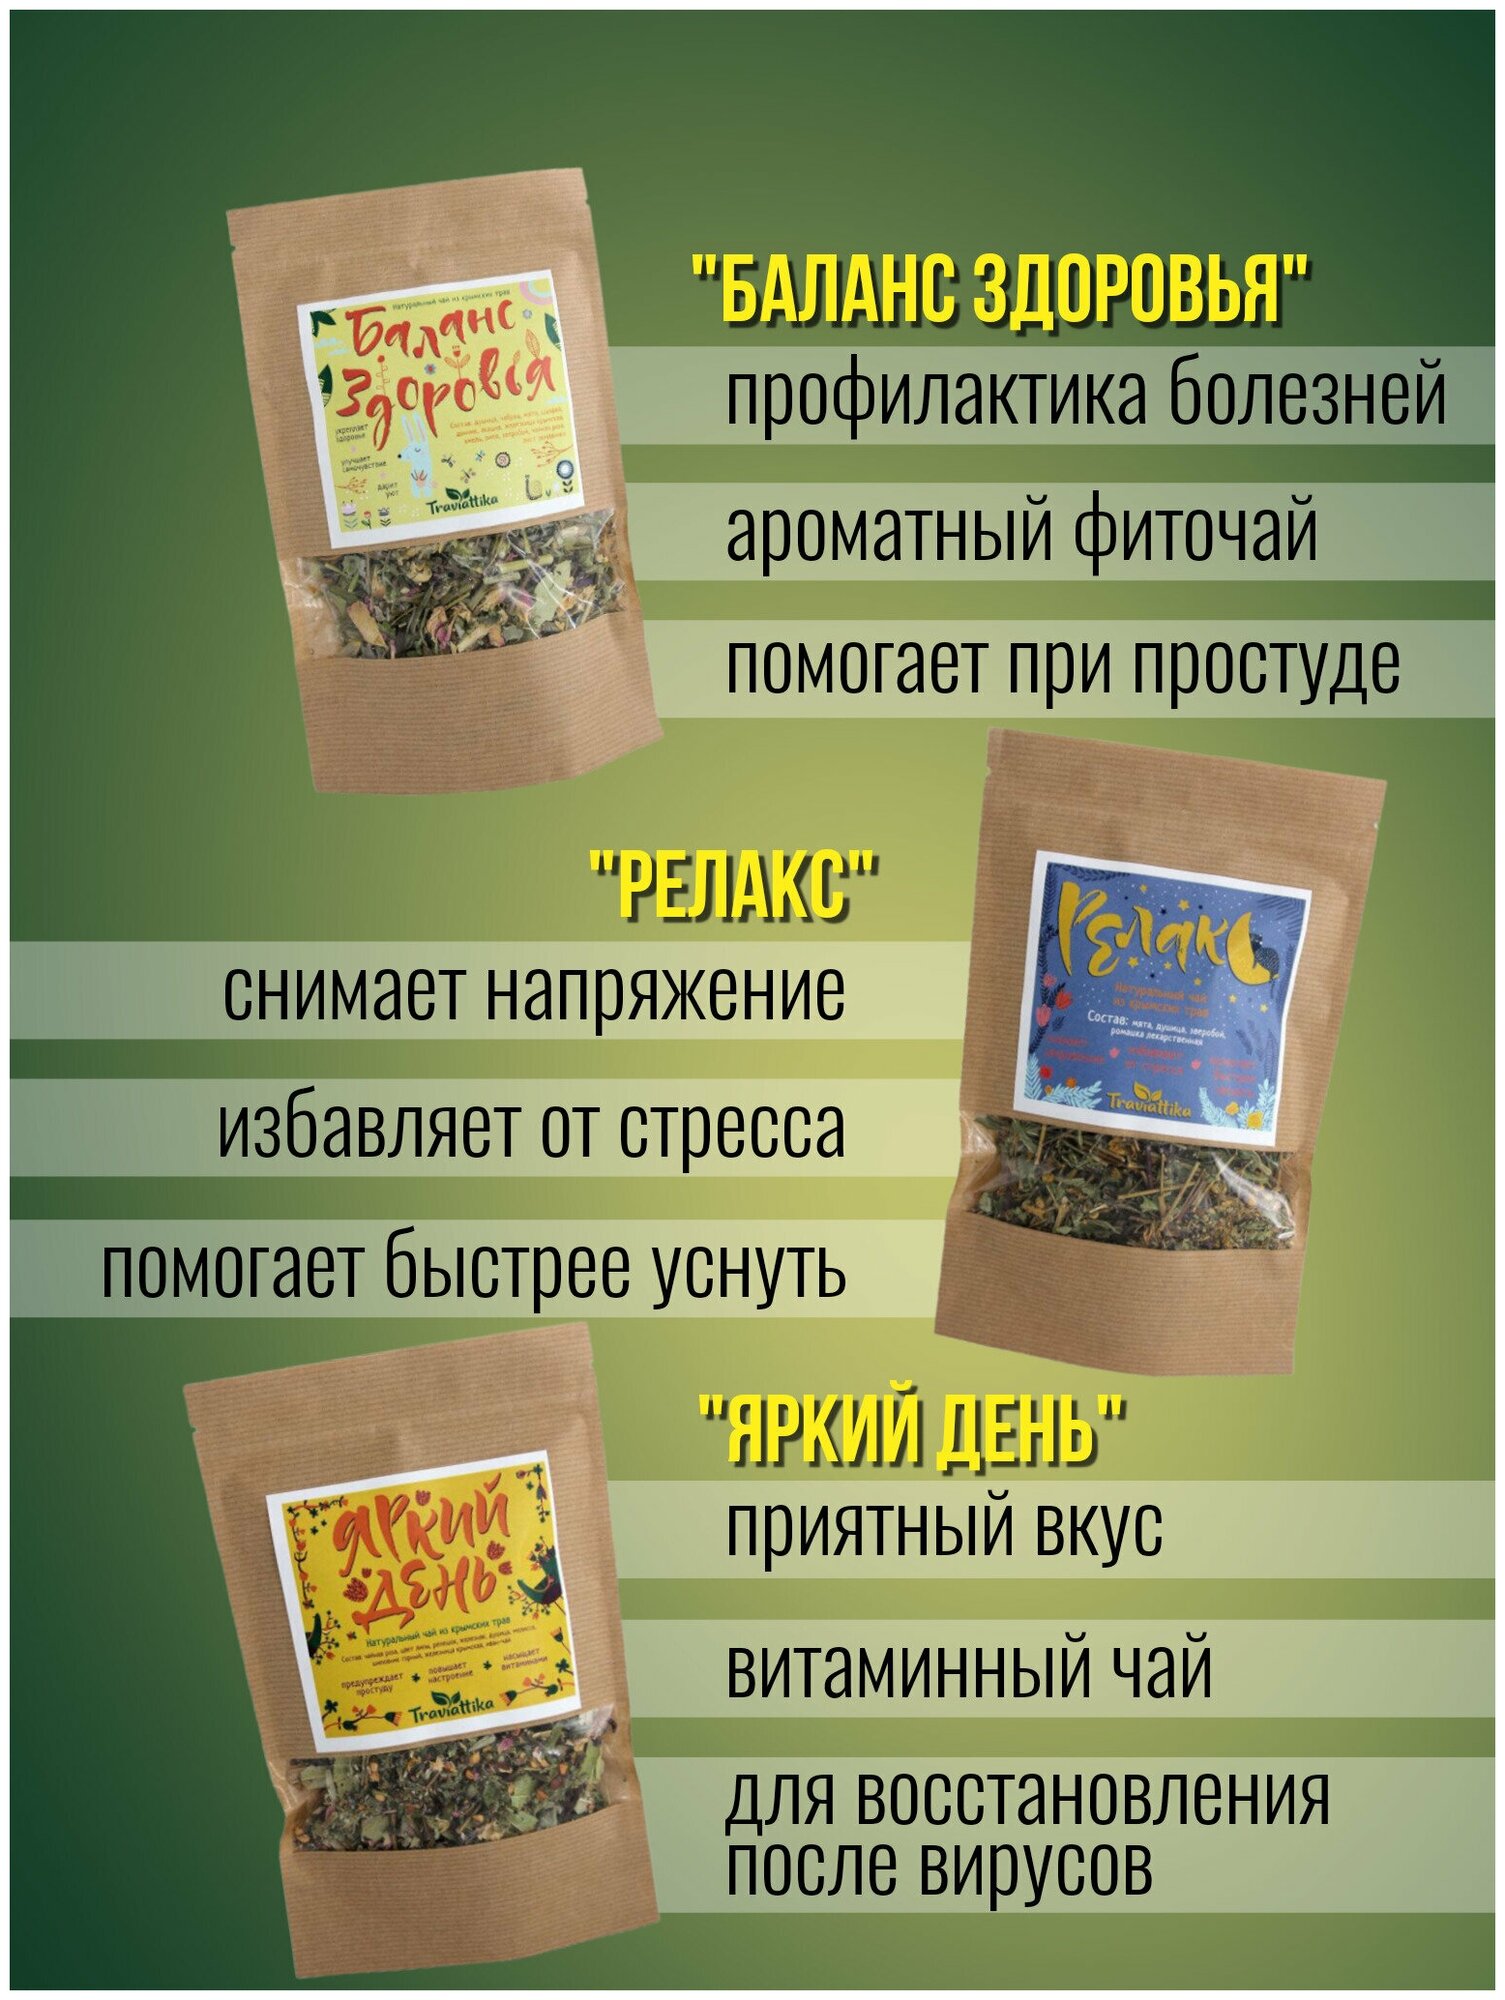 Набор крымских травяных чаев Traviattika: успокаивающий, общеукрепляющий витаминизирующий. Целебные травы, вкусный рассыпной фиточай - фотография № 2